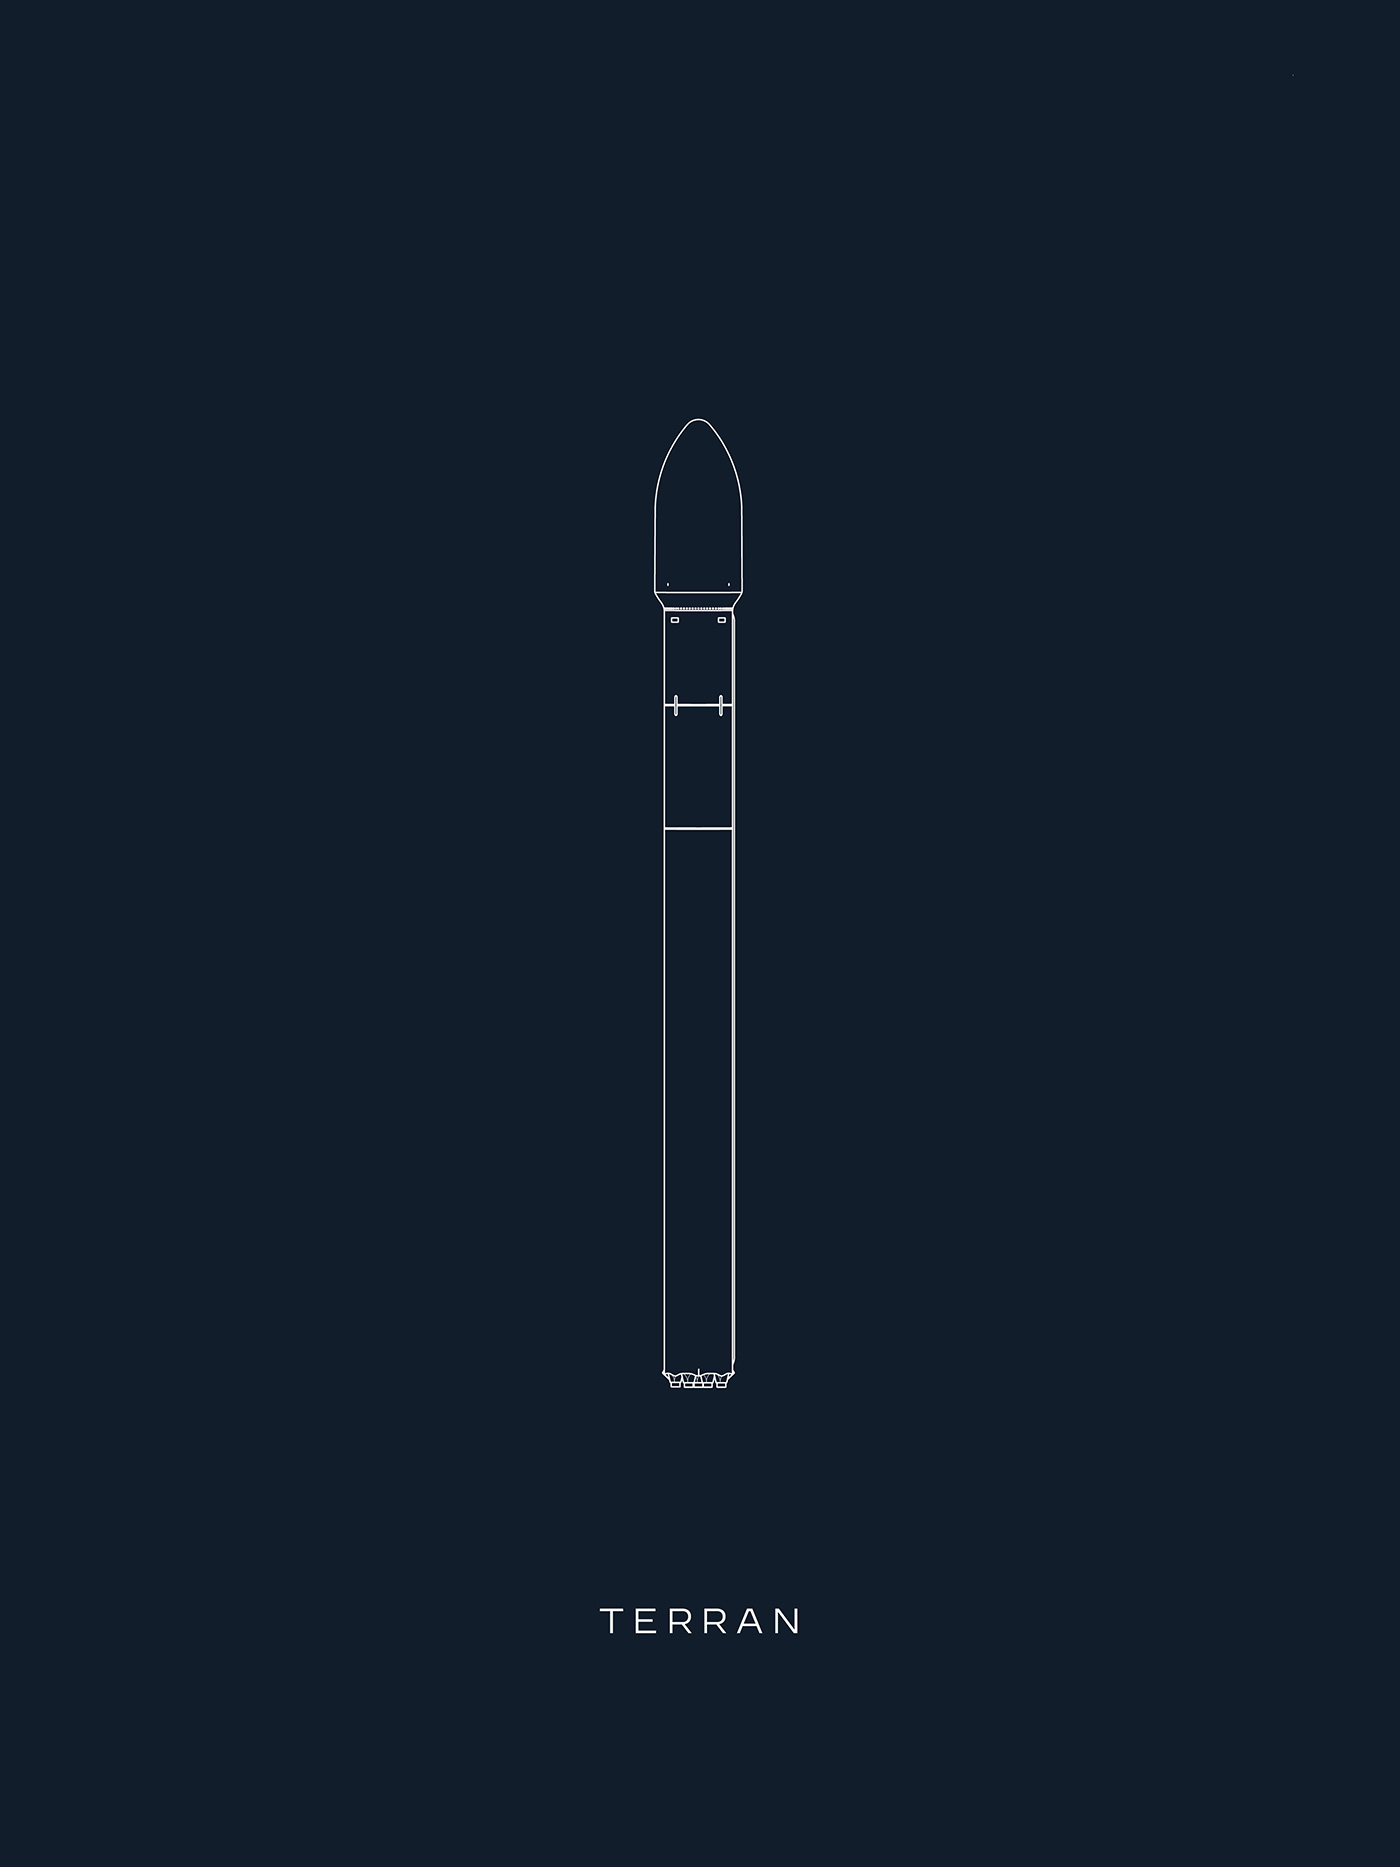 Illustration of Terran rocket